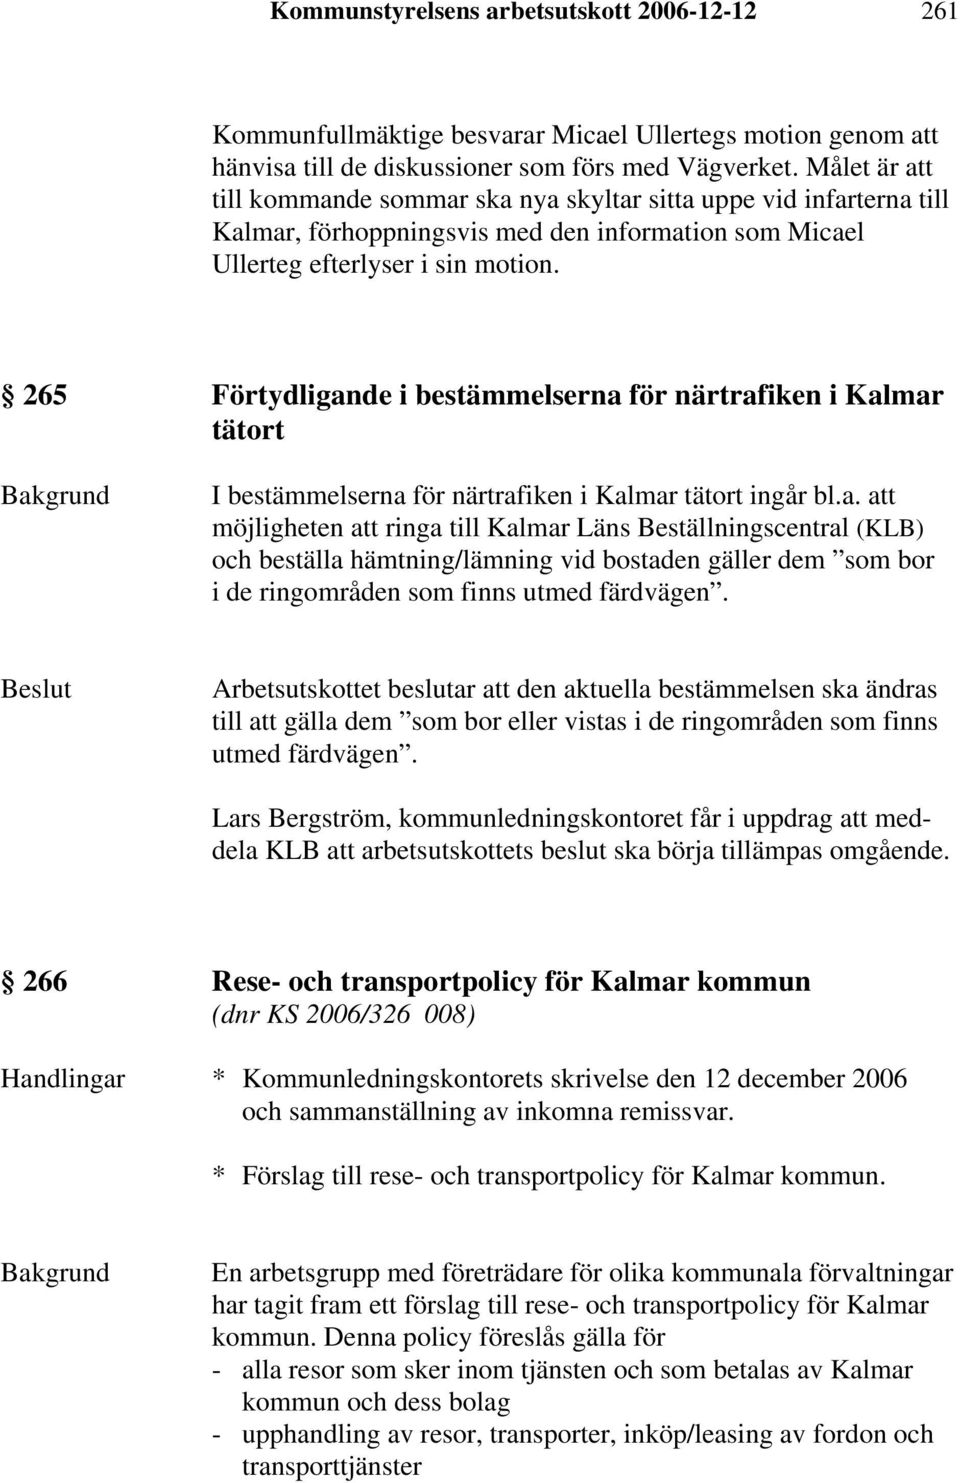 265 Förtydligande i bestämmelserna för närtrafiken i Kalmar tätort I bestämmelserna för närtrafiken i Kalmar tätort ingår bl.a. att möjligheten att ringa till Kalmar Läns Beställningscentral (KLB) och beställa hämtning/lämning vid bostaden gäller dem som bor i de ringområden som finns utmed färdvägen.